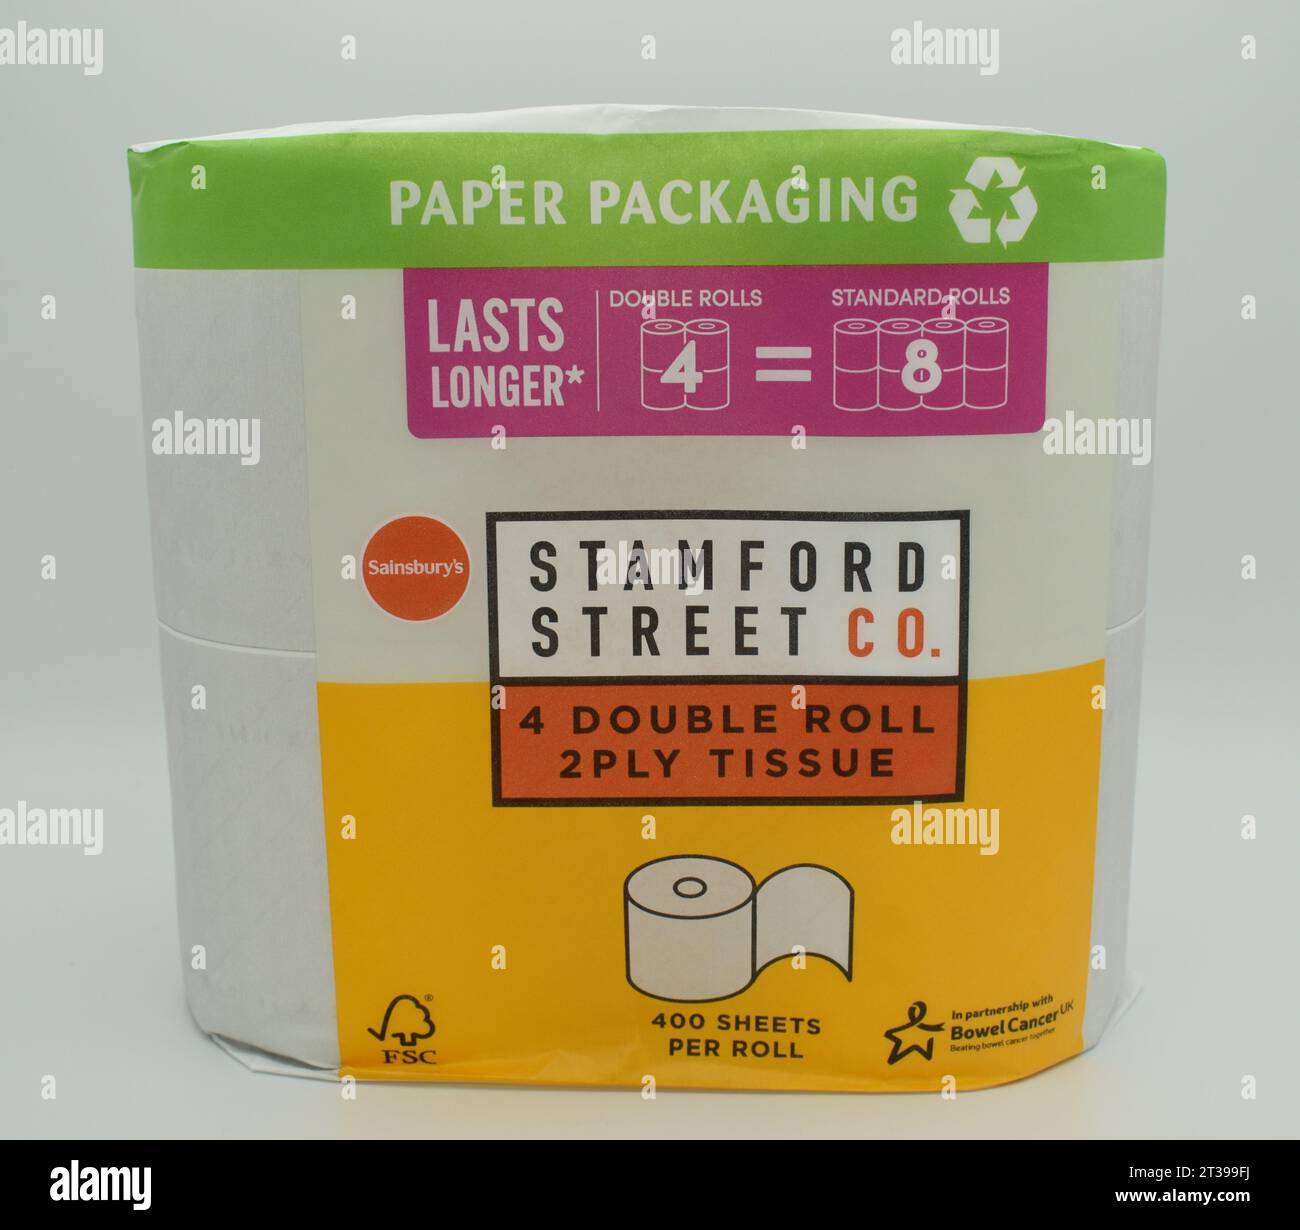 Sainsbury's Supermarkt hat seine wertvollen Marken, einschließlich Toilettenpapier, auf ein neues Label verlagert - Stamford Street Co. Stockfoto